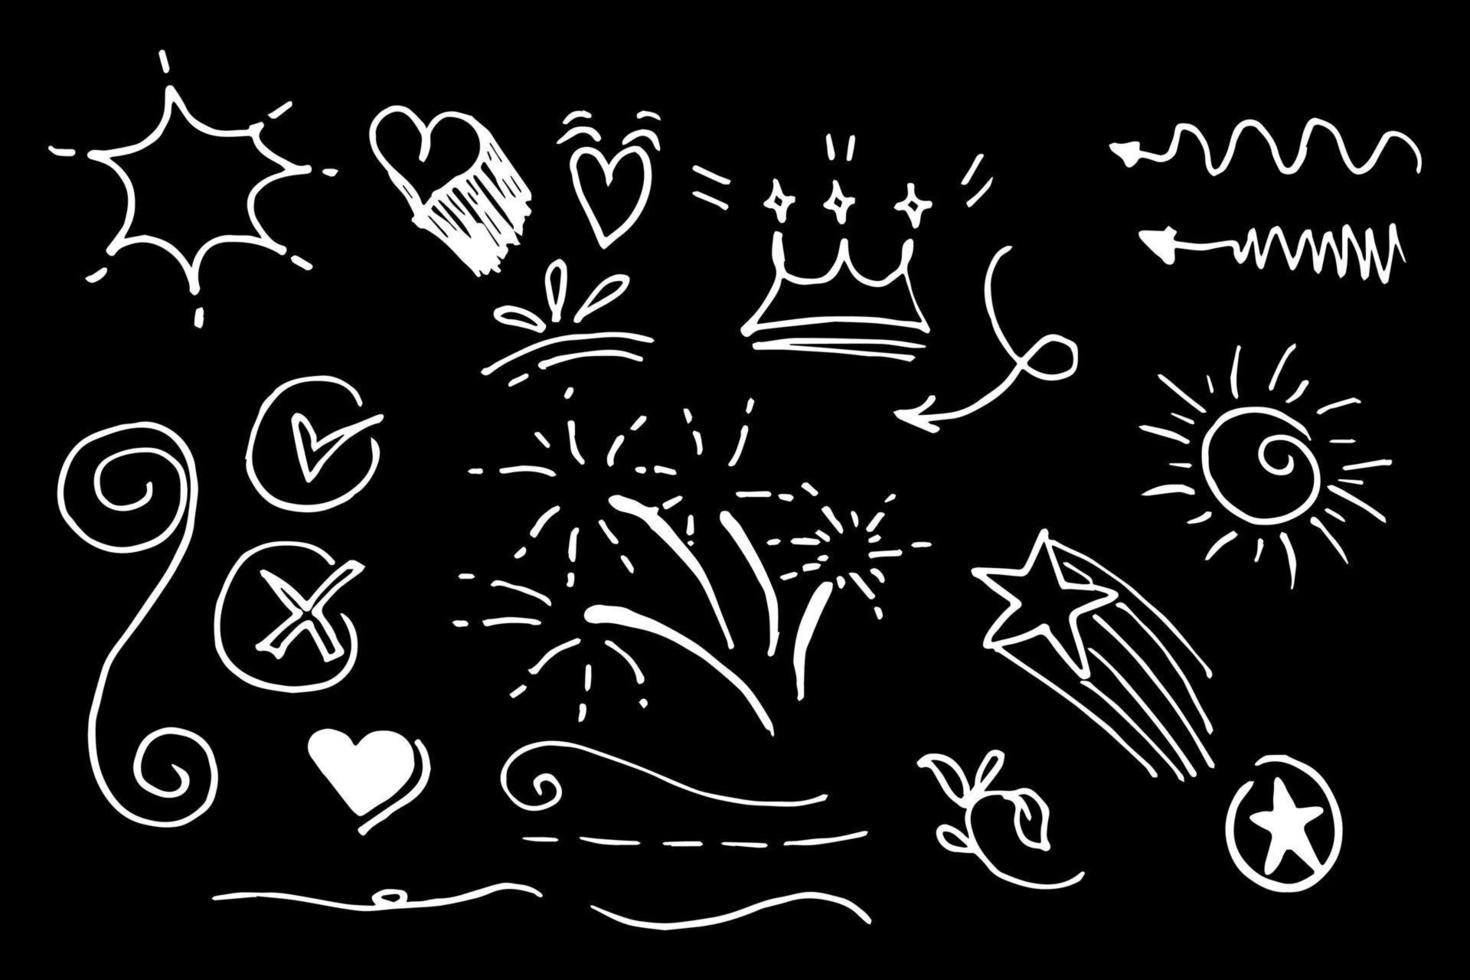 collection de doodle de vecteur d'élément de conception. swishes bouclés, swoops, tourbillon, flèche, coeur, amour, couronne, fleur, étoile, feu d'artifice, texte en surbrillance et élément d'accentuation. utiliser pour la conception